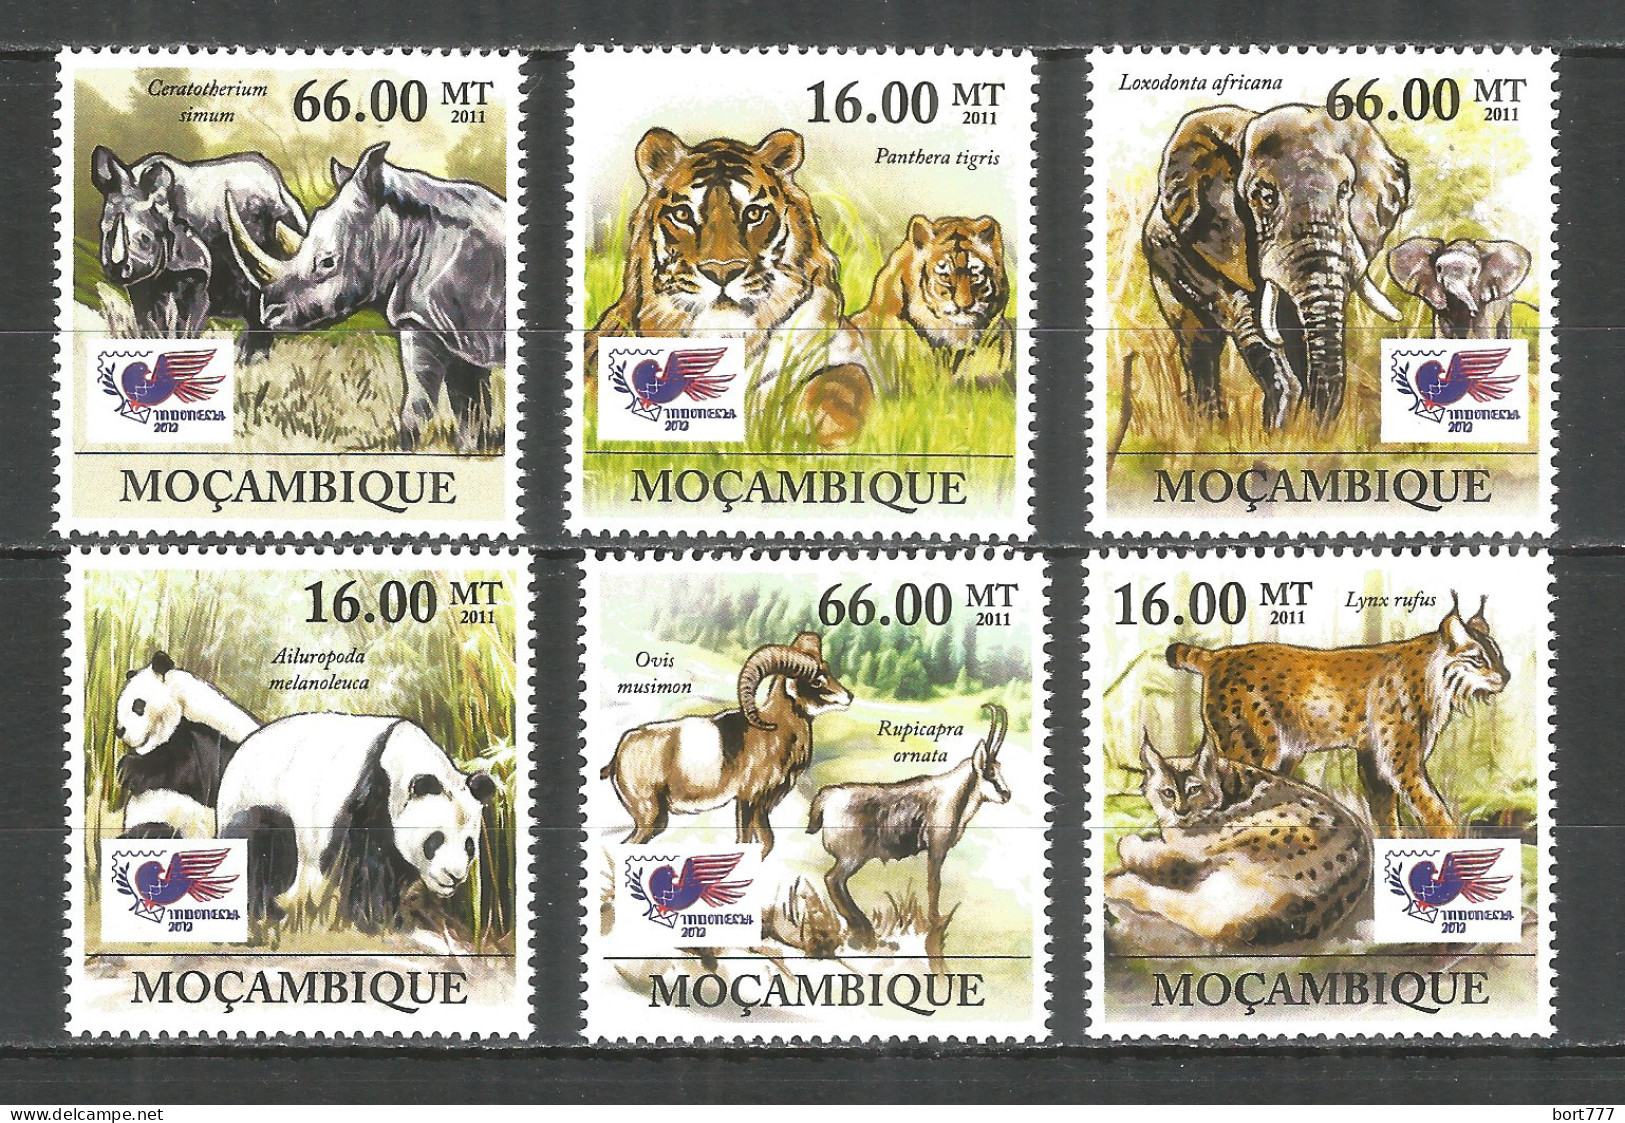 Mozambique 2011 Mint Stamps MNH(**) Animals - Mozambique